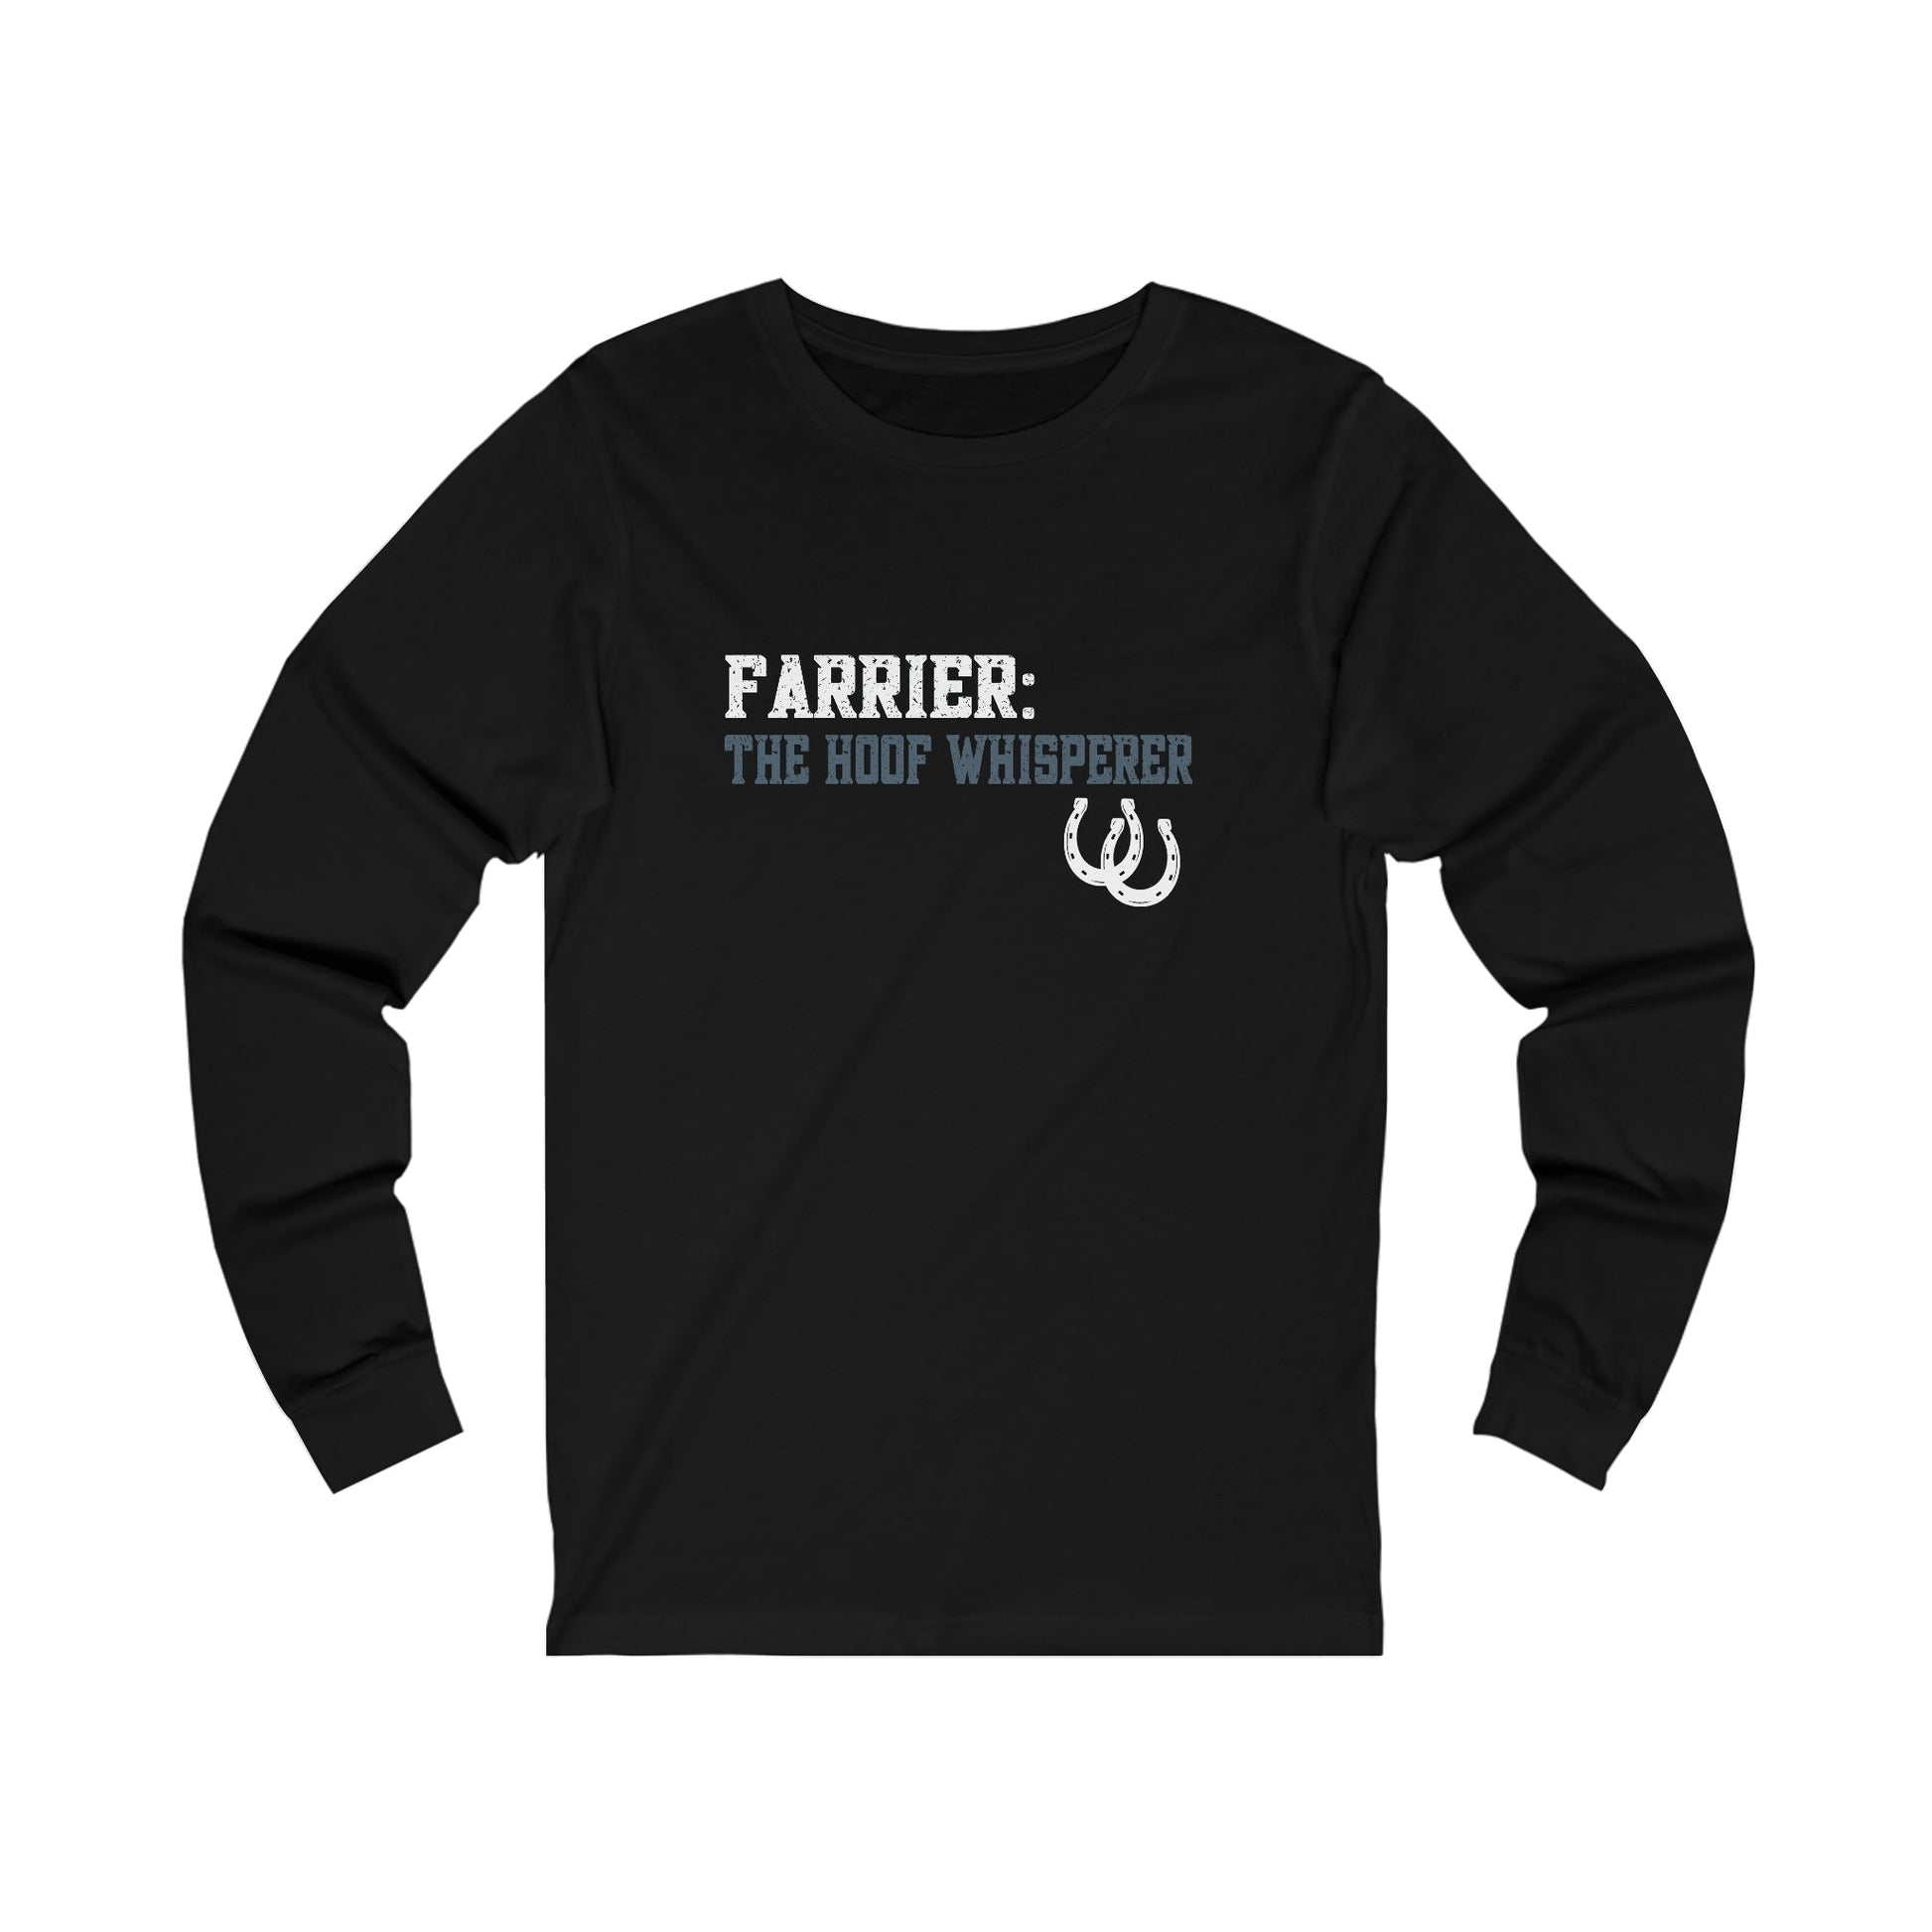 Farrier Longsleeve T-shirt, The Hoof Whisperer, Horseshoer Tee, Professional Farrier Shirt, Gift for Farrier - FlooredByArt